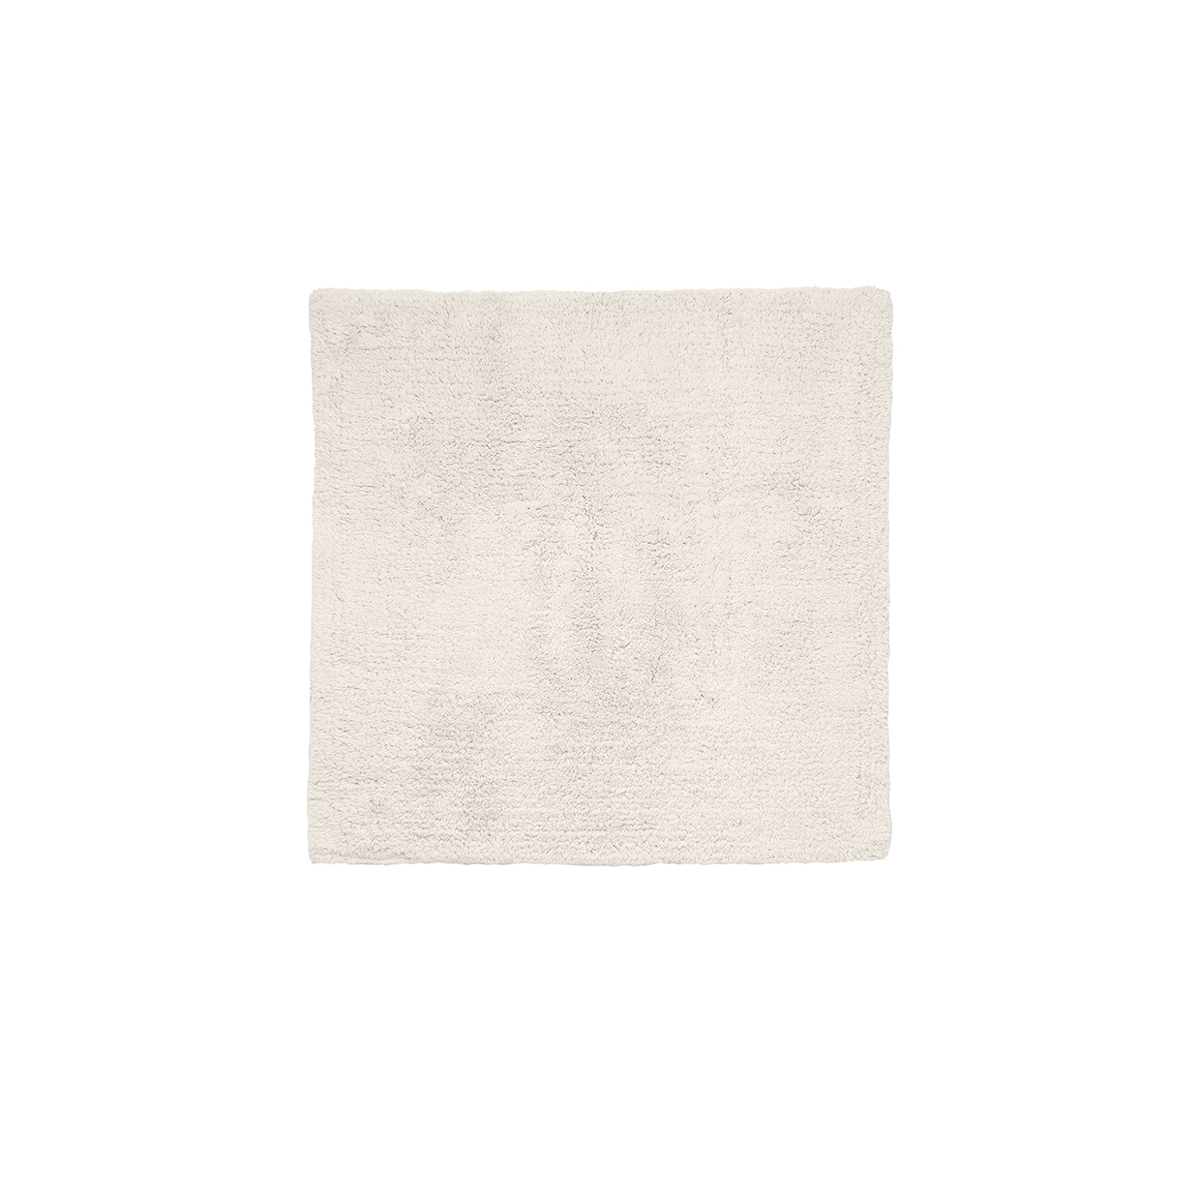 Badematte -TWIN- Moonbeam 60 x 60 cm. Material: Baumwolle. Von Blomus.